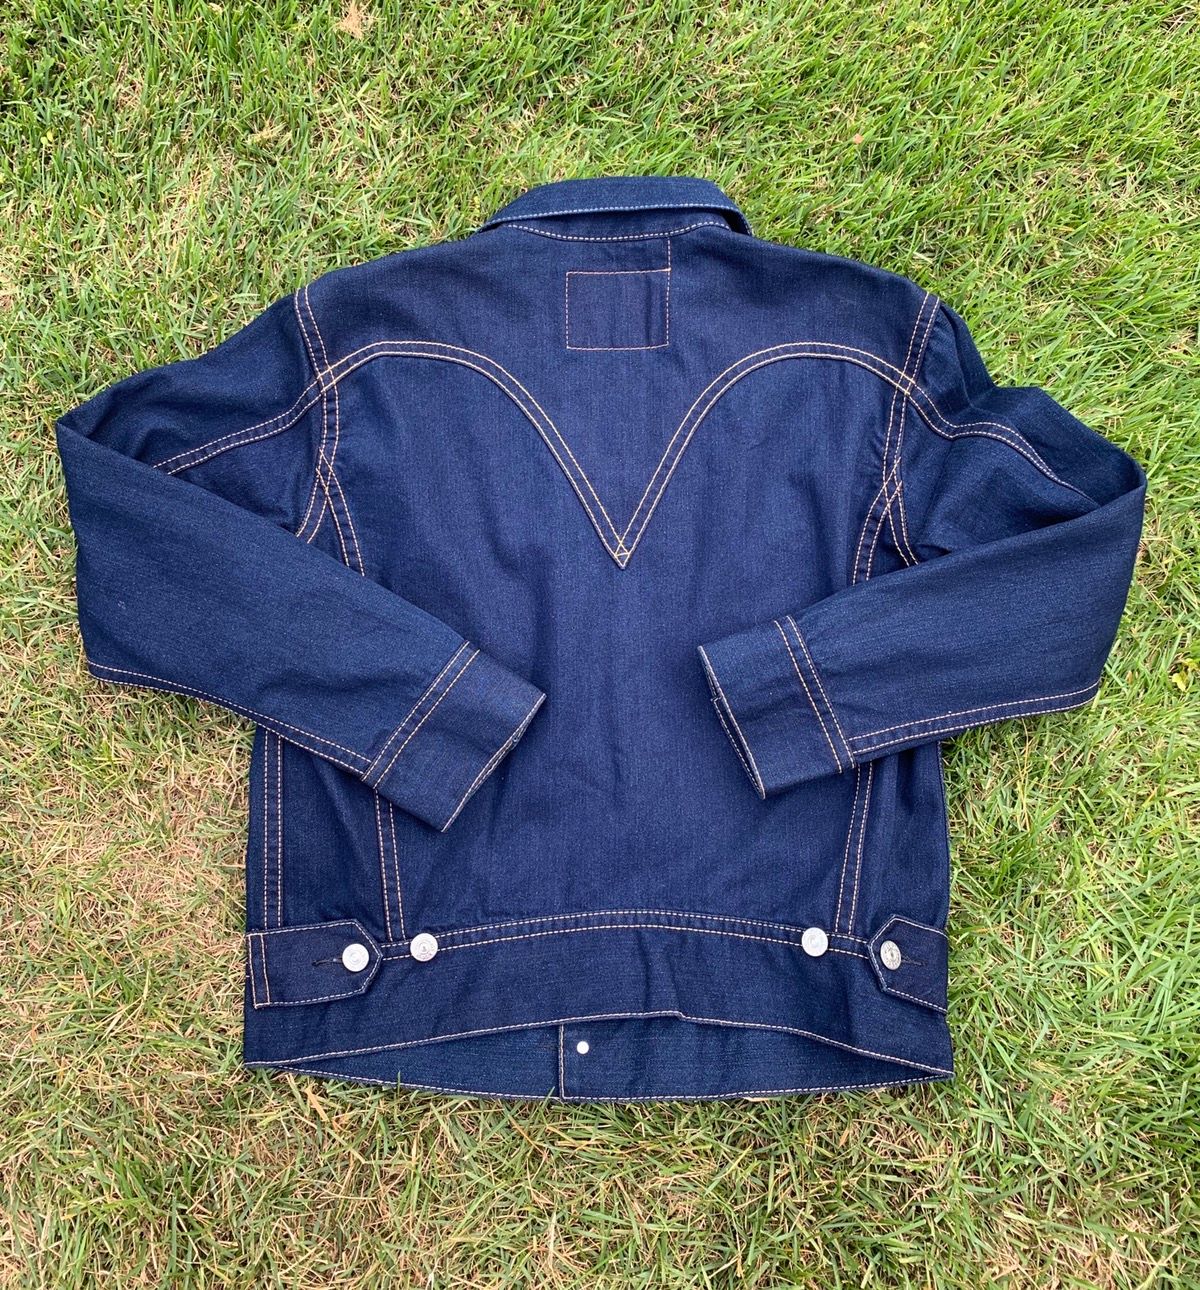 Levi's Vintage Style Levi’s Type 1 Iconic Denim Jean Trucker Jacket Size US L / EU 52-54 / 3 - 2 Preview